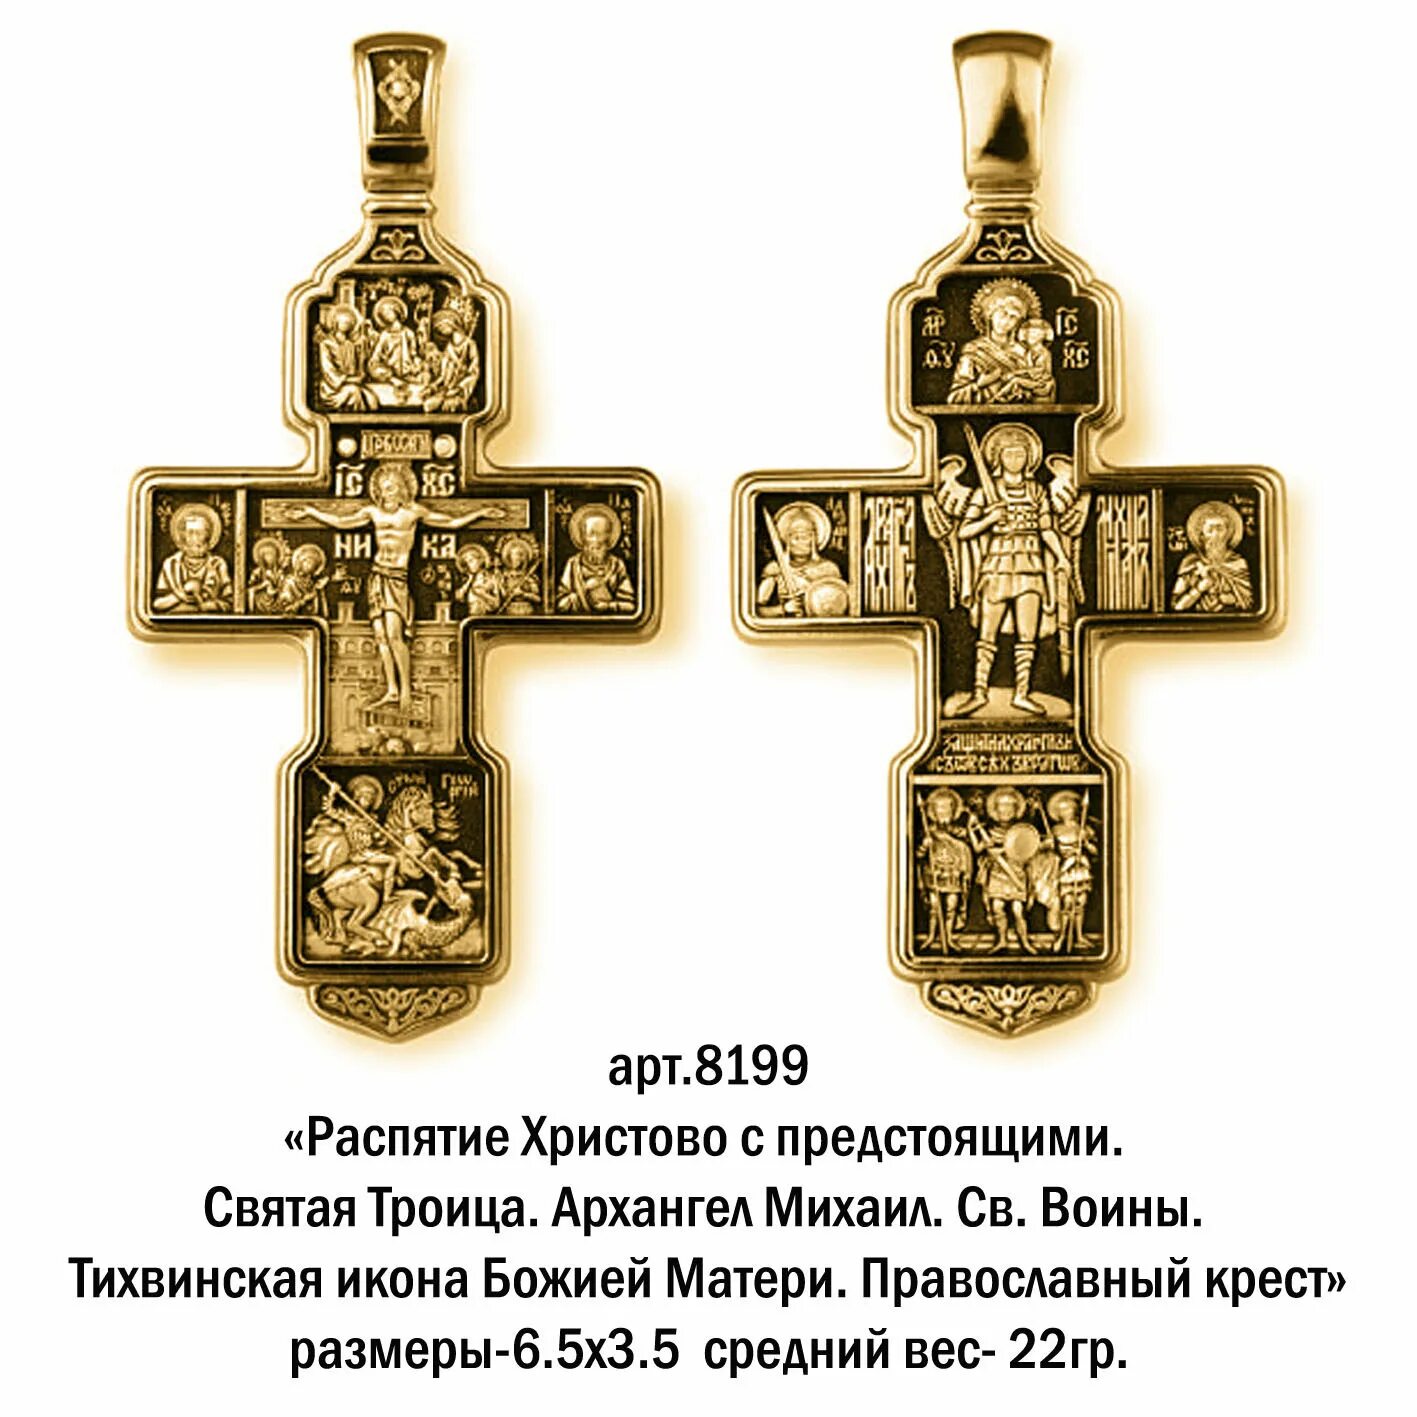 Православный крест (крест Святого Лазаря). Изображения на нательном крестике.